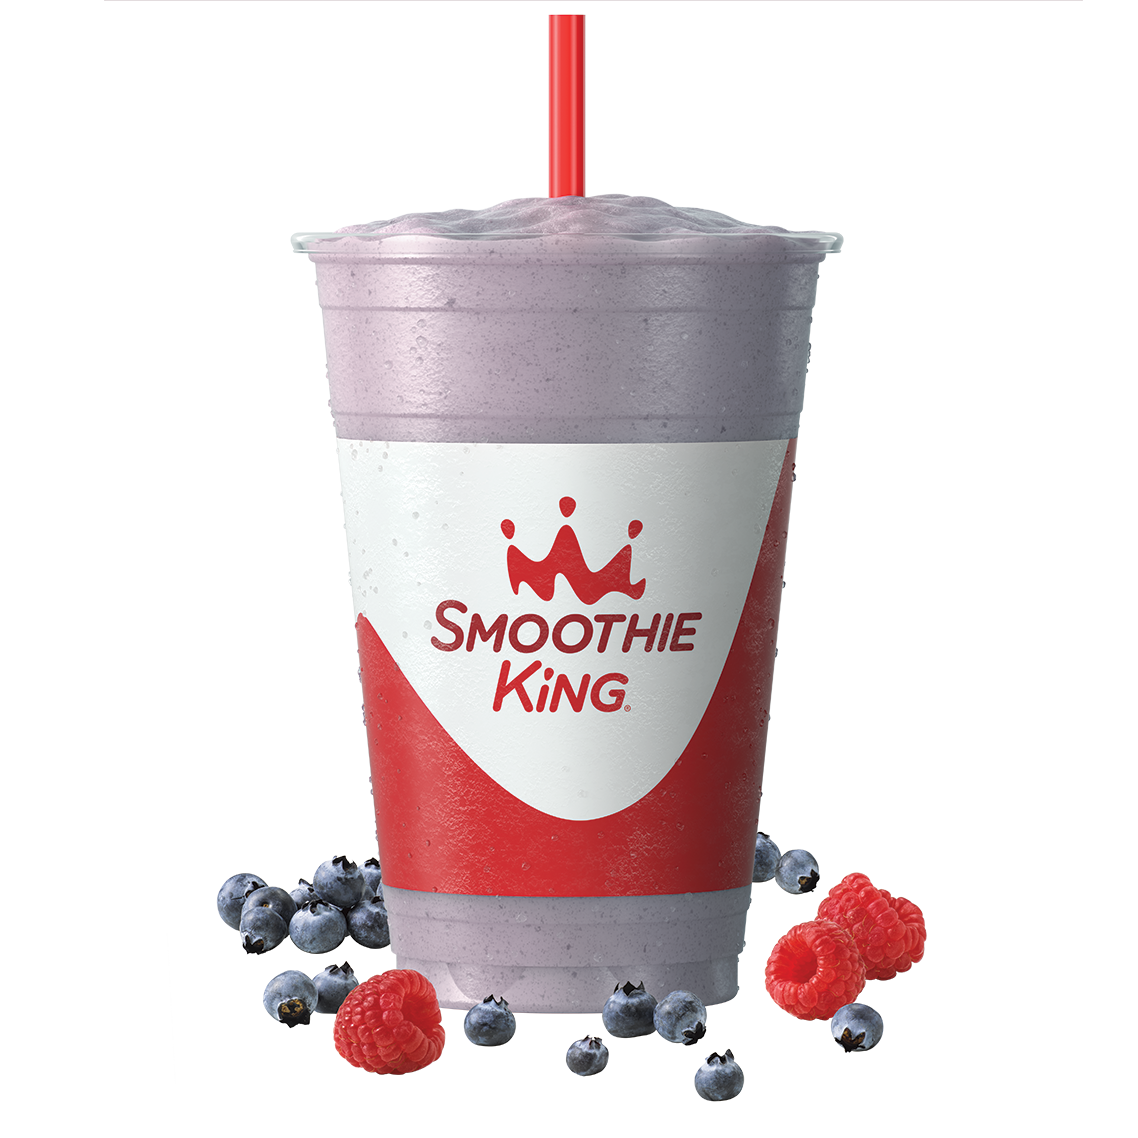 Smoothie King: Enjoy a FREE Keto smoothie on August 20!